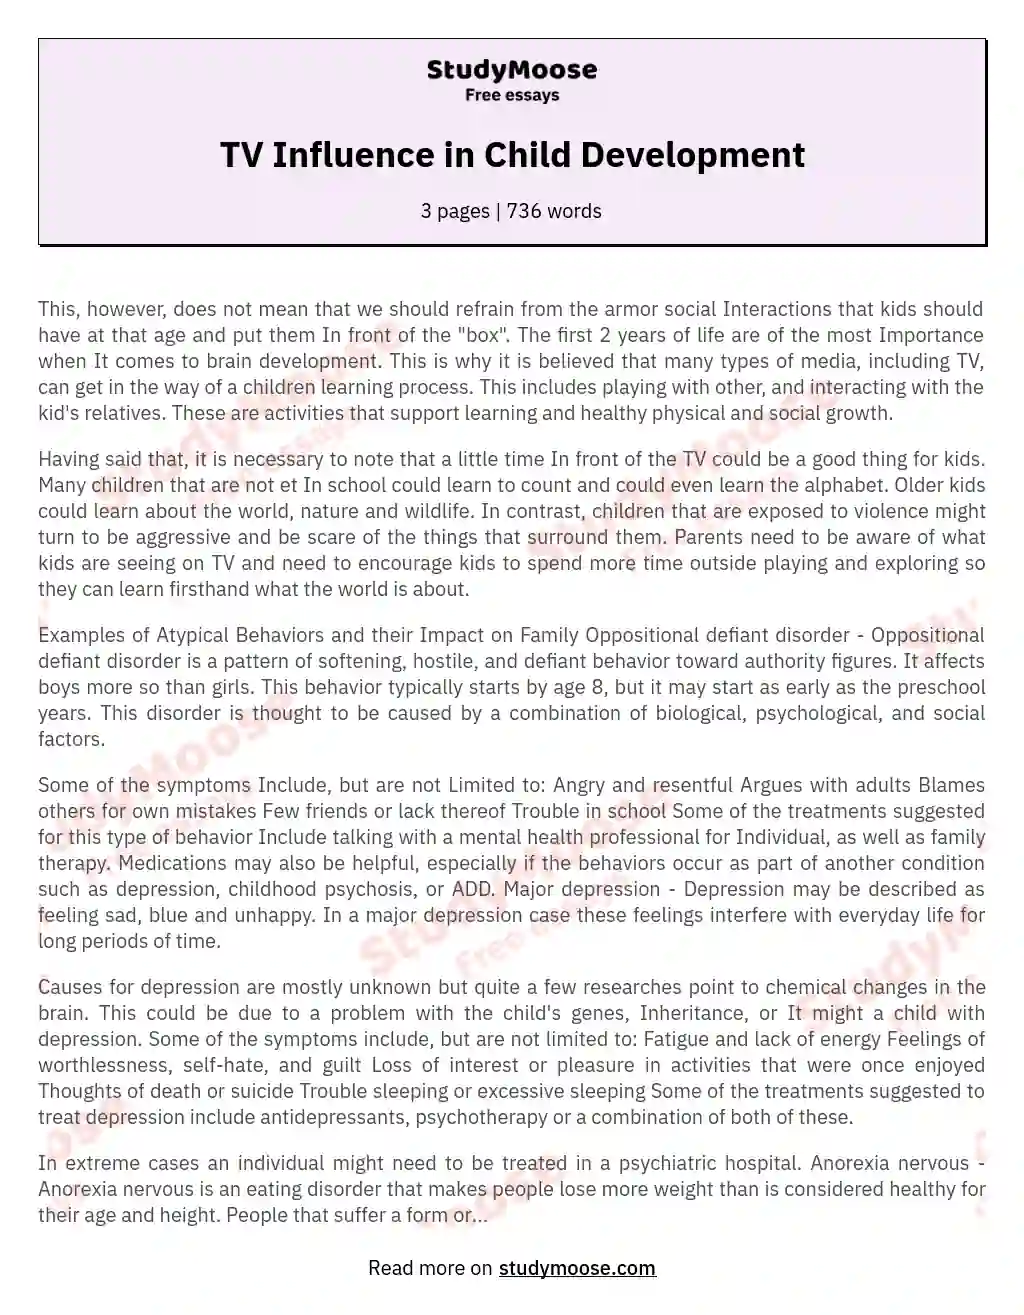 TV Influence in Child Development essay